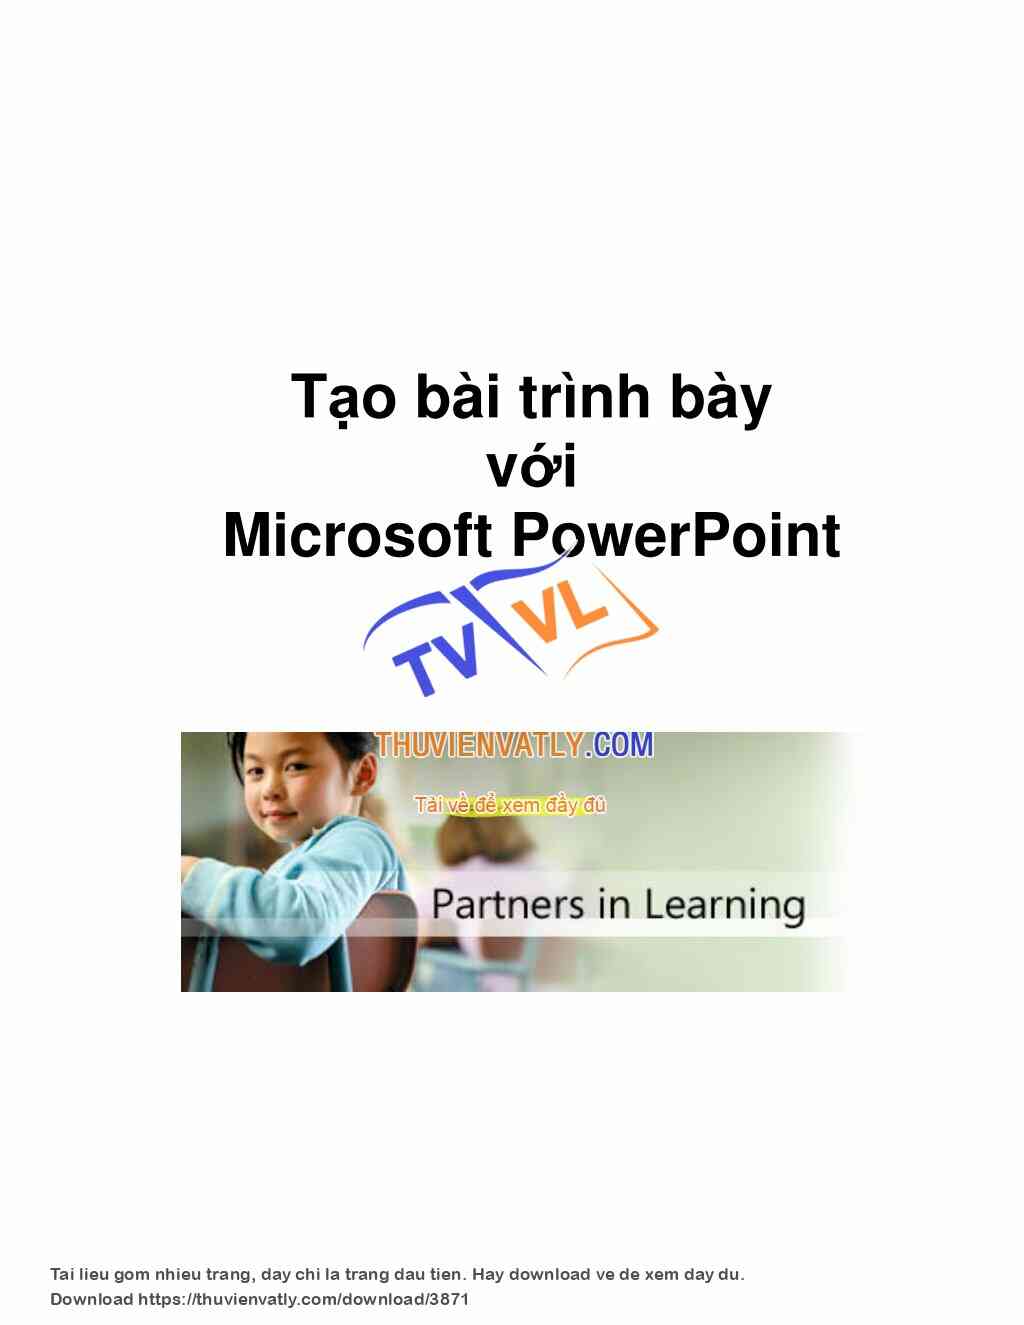 Tạo bài trình bày với Microsoft PowerPoint